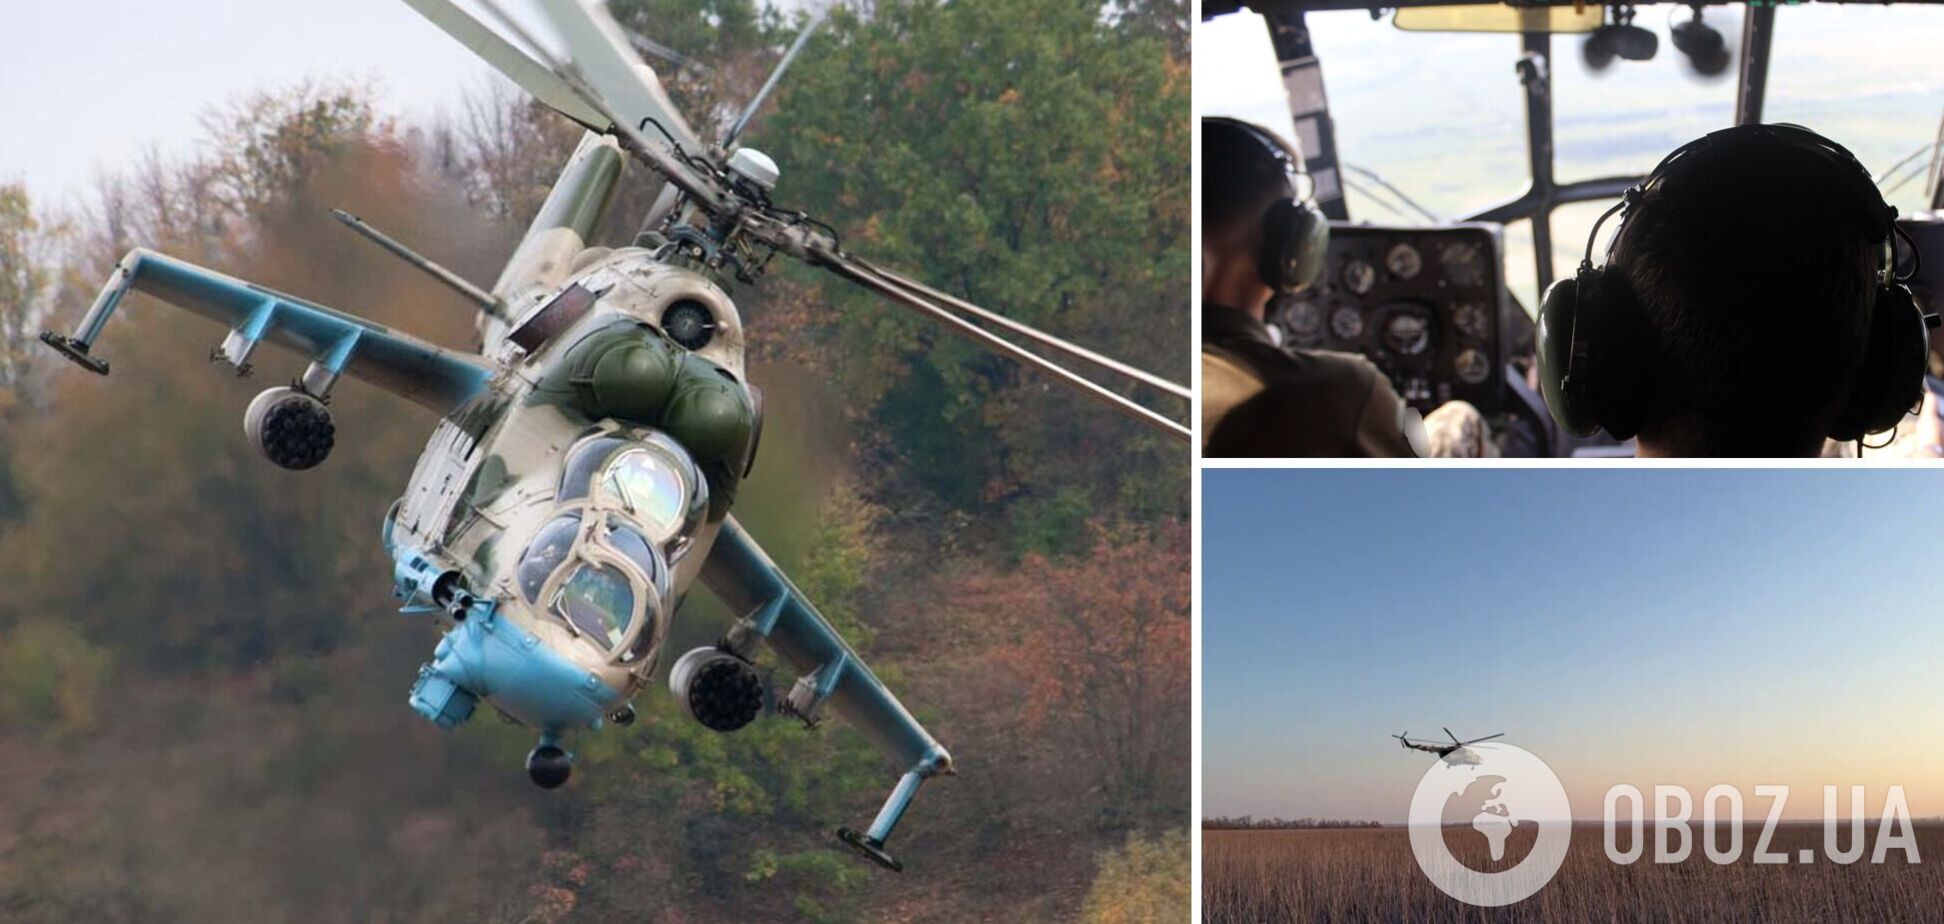 Украинские авиаторы передали привет с неба в солнечный боевой день: вдохновляющее видео